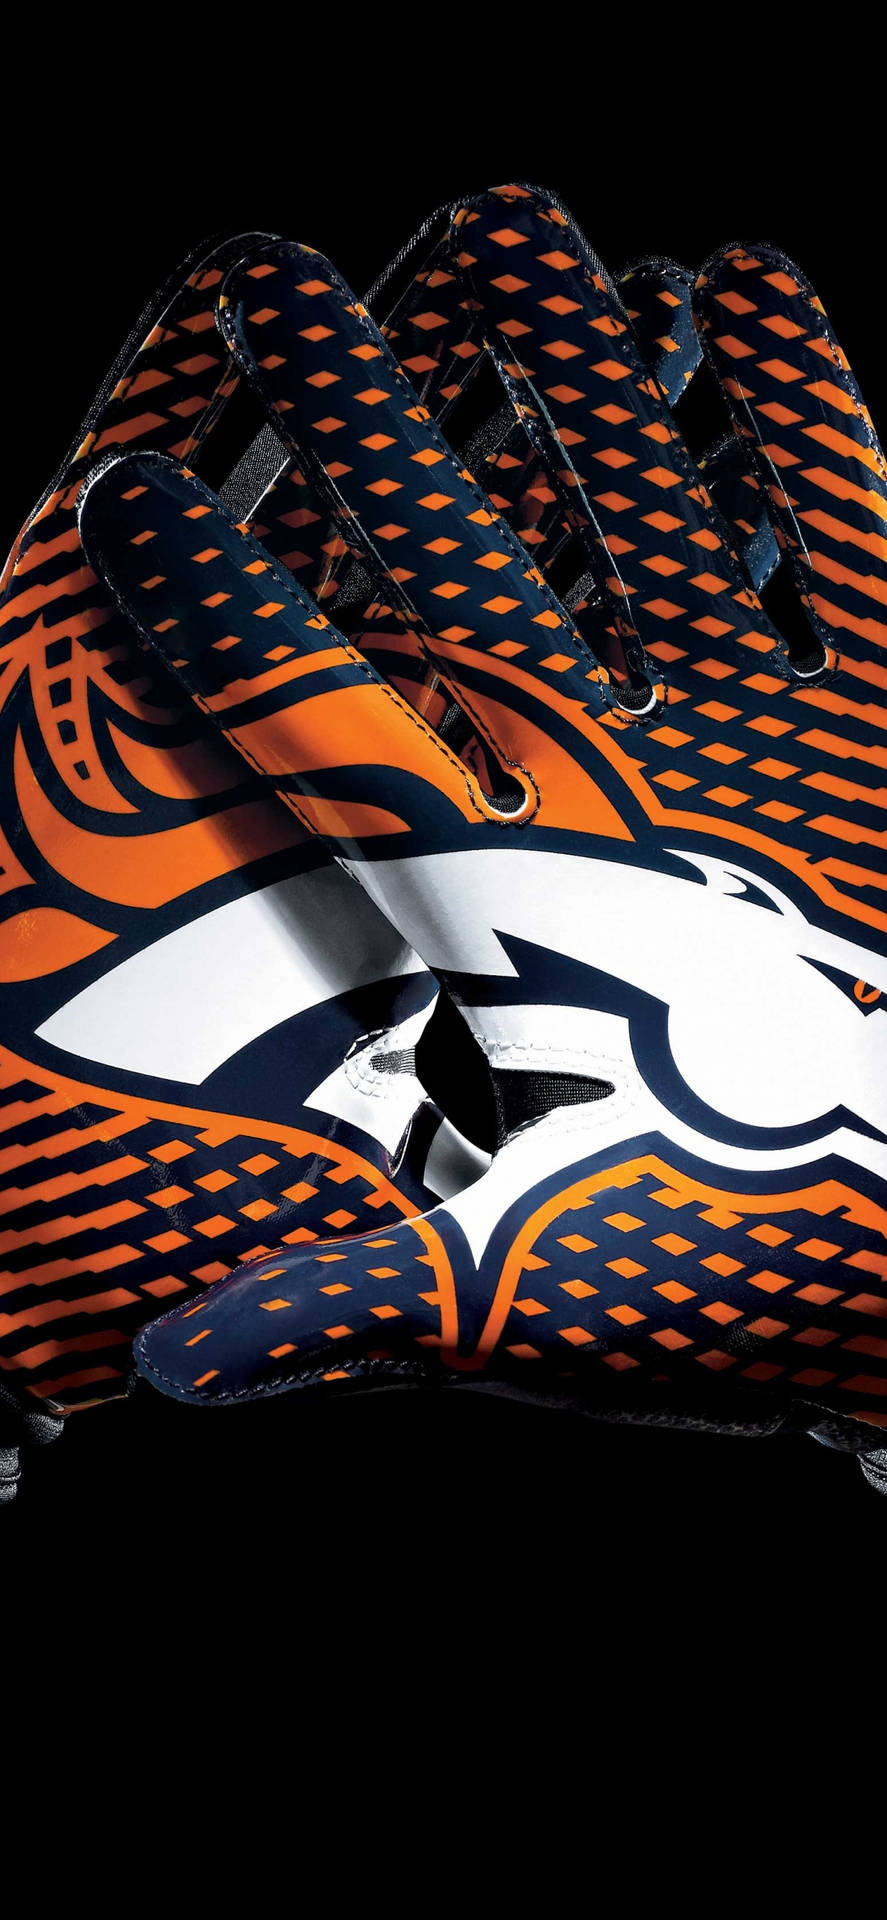 Dinver Broncos iPhone-tapet: Et professionelt tapet med Denver Broncos-logo og mønster. Wallpaper